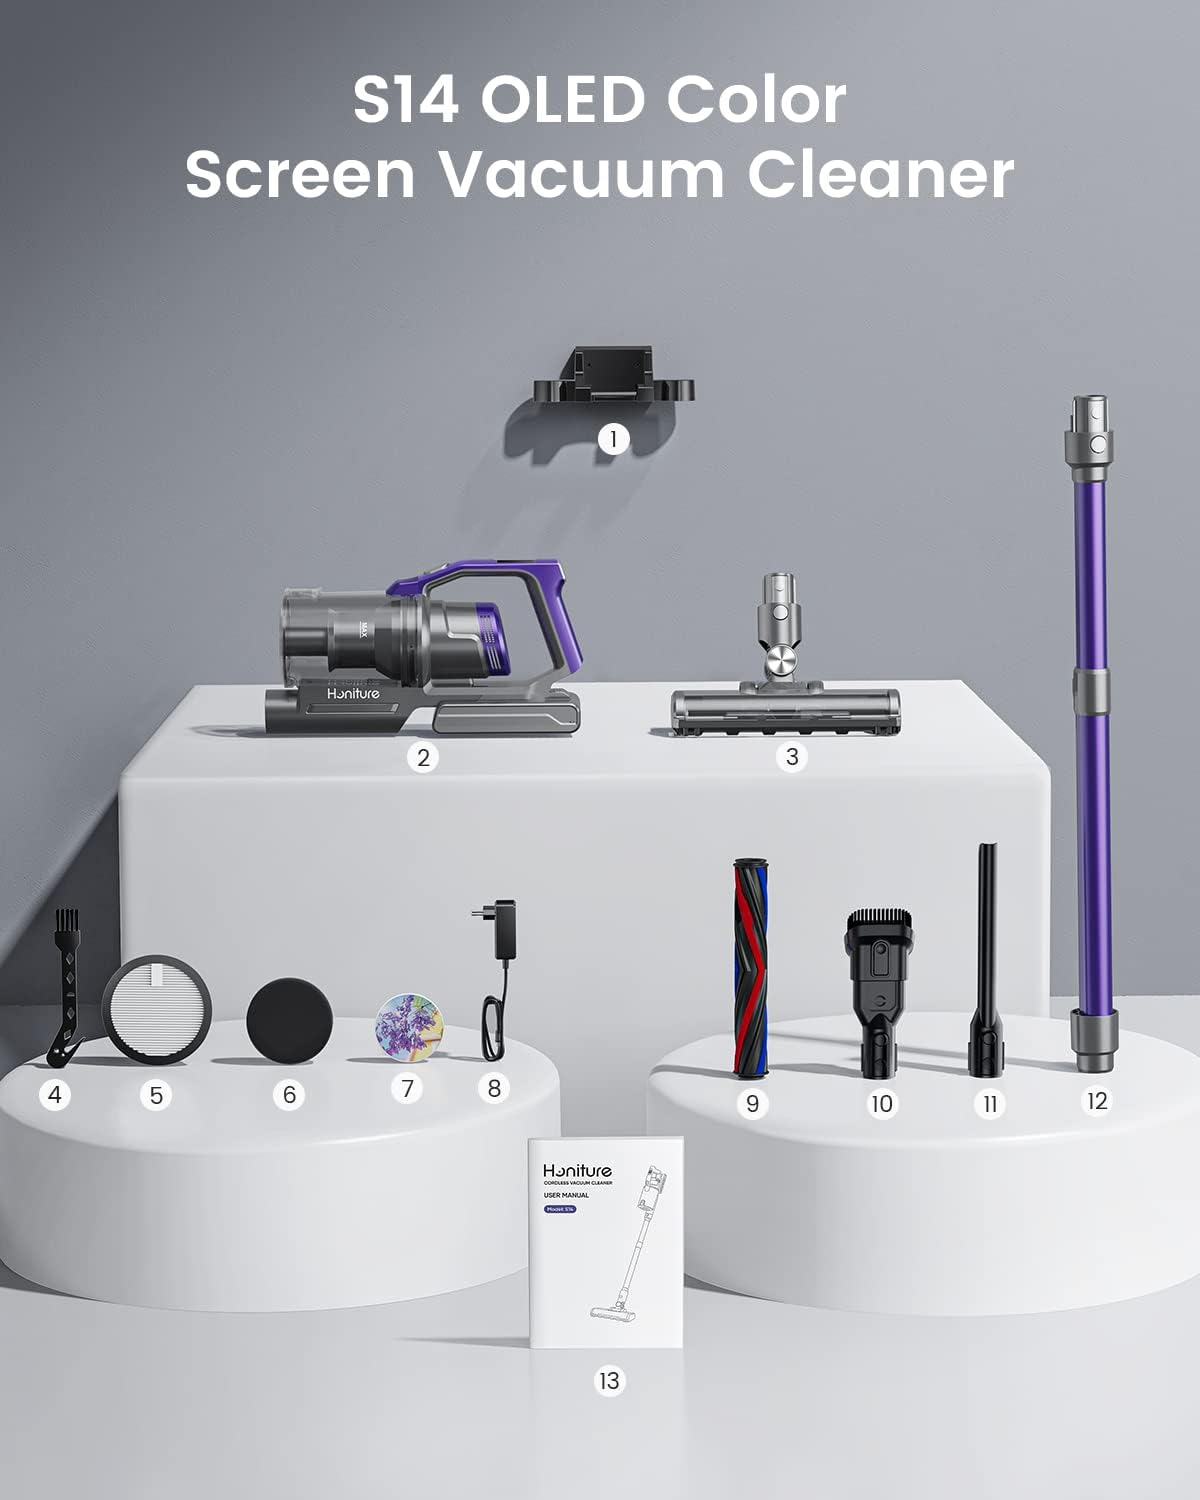 Cordless Vacuum Cleaner, 450W Stick Vacuum Cleaner, OLED Color